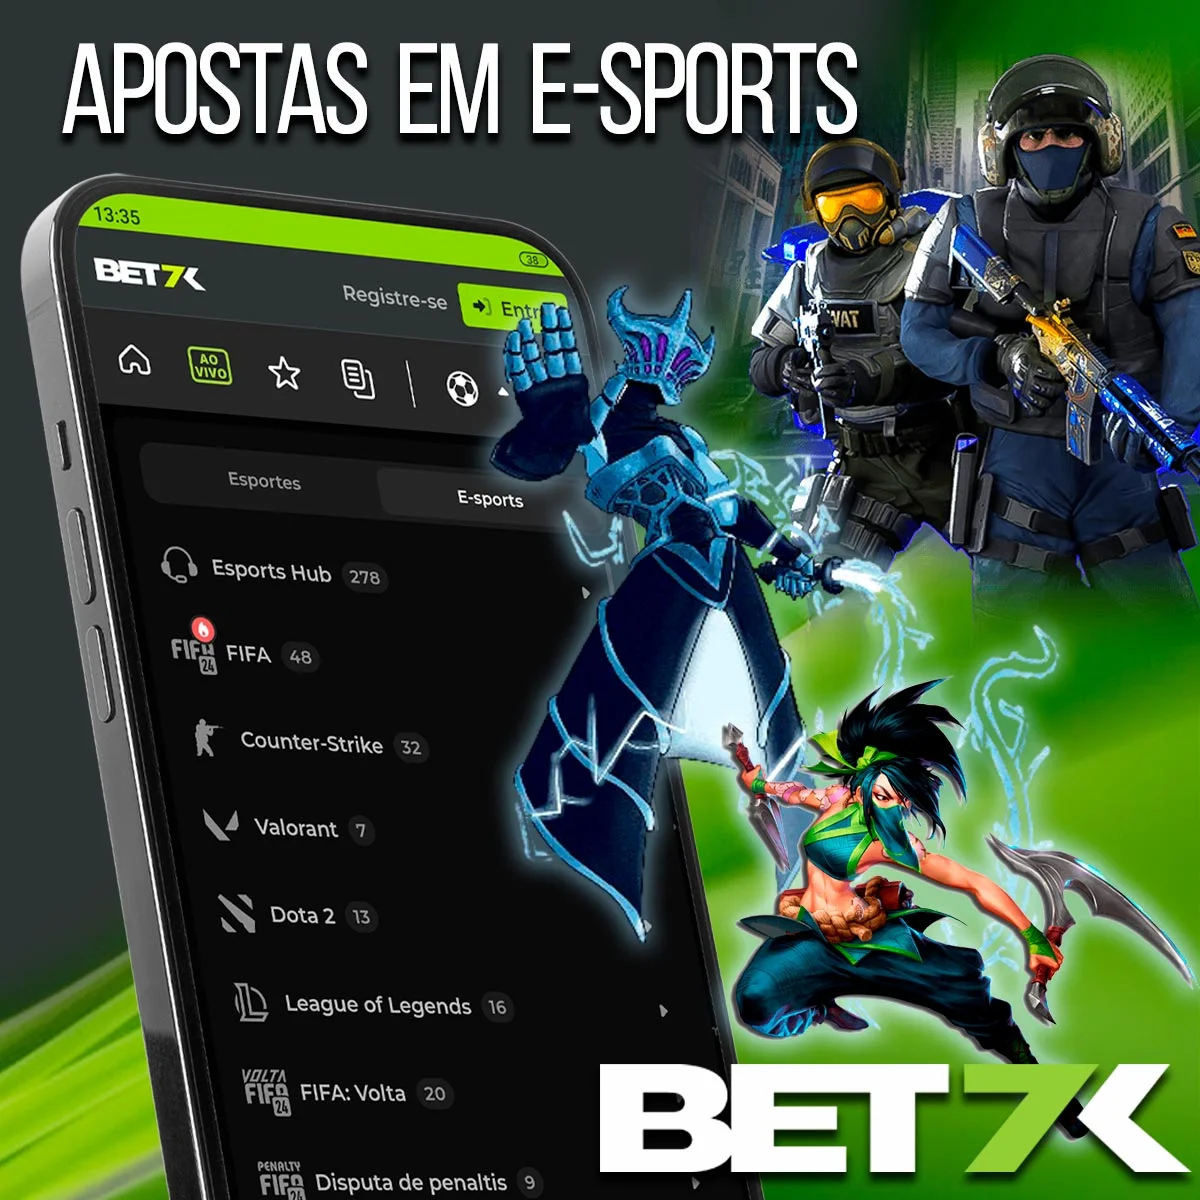 Apostas em eSports na casa de apostas Bet7k no Brasil